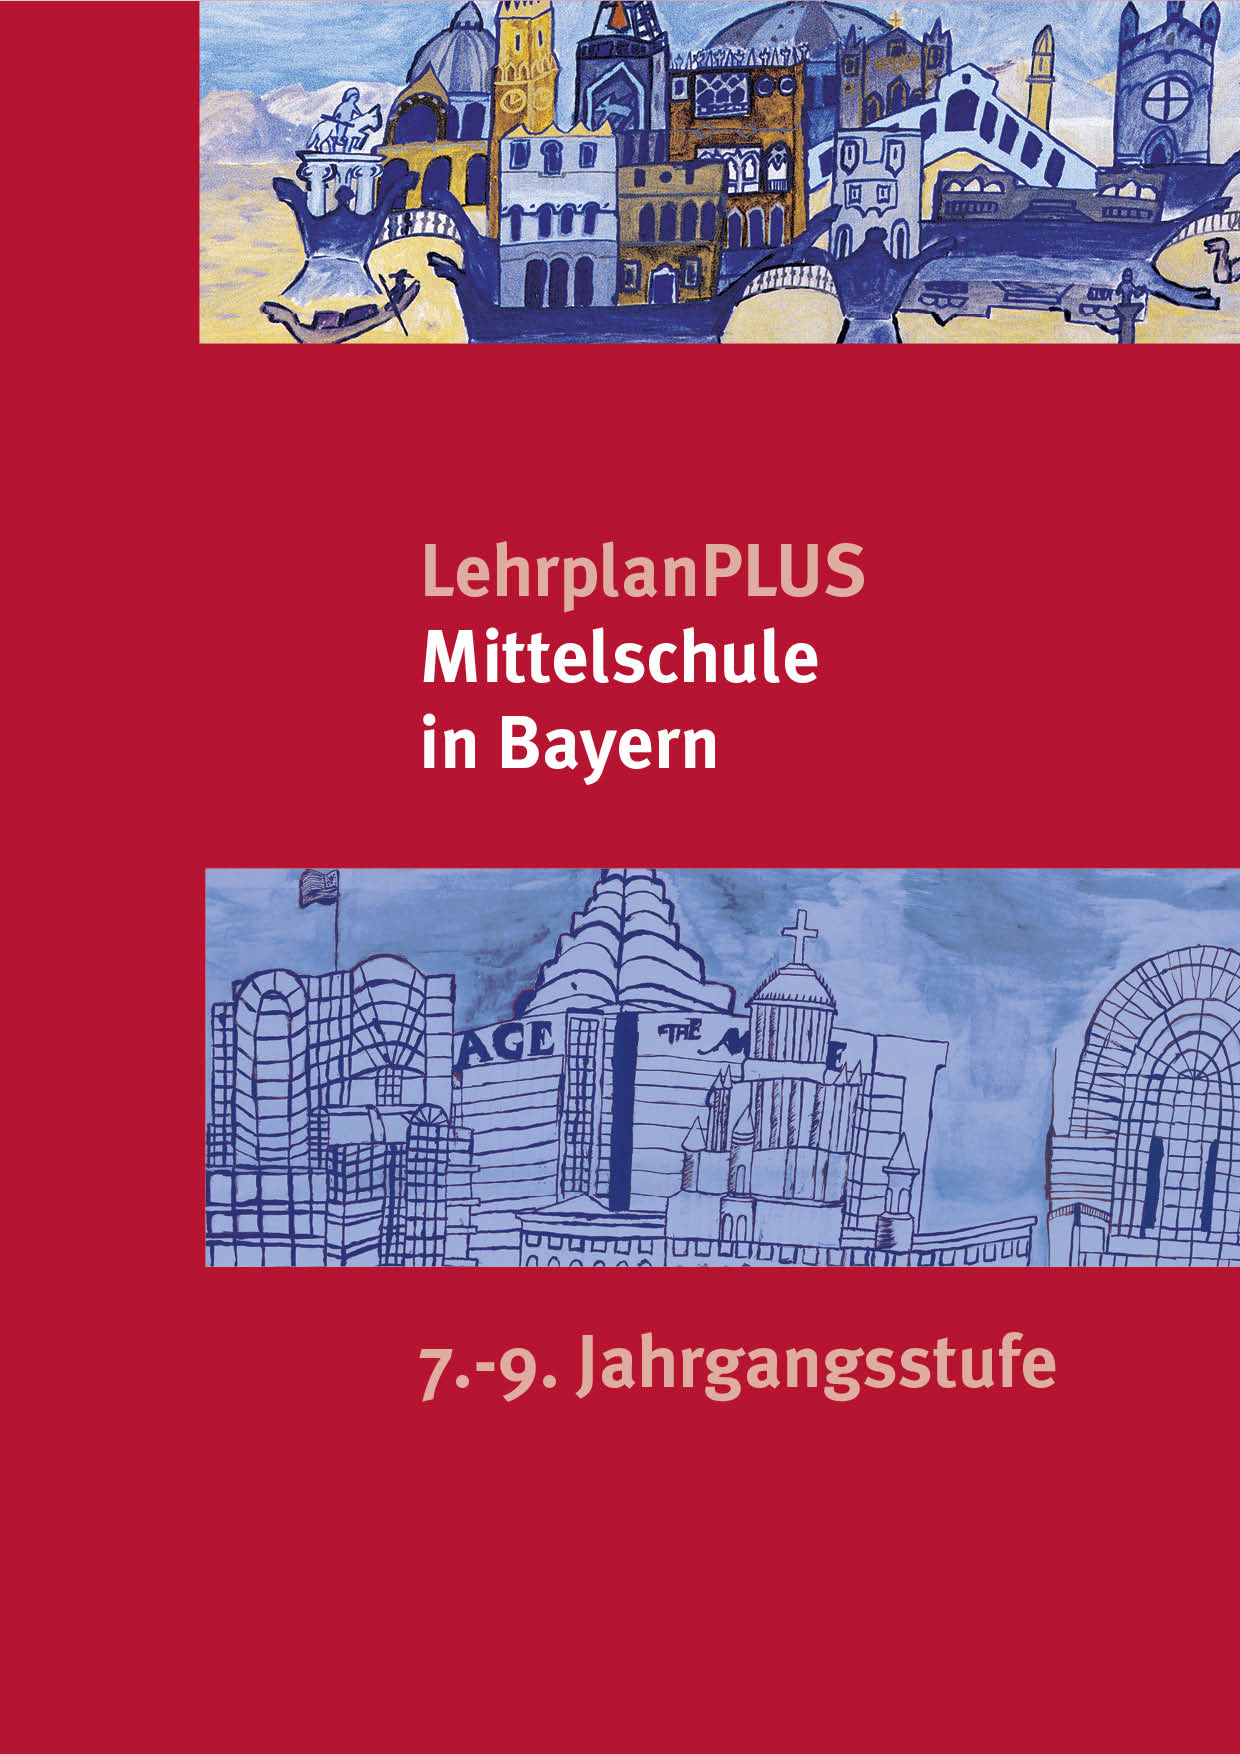 LehrplanPLUS für die Mittelschule 7.-9. Jahrgangsstufe, 1. Auflage 2017